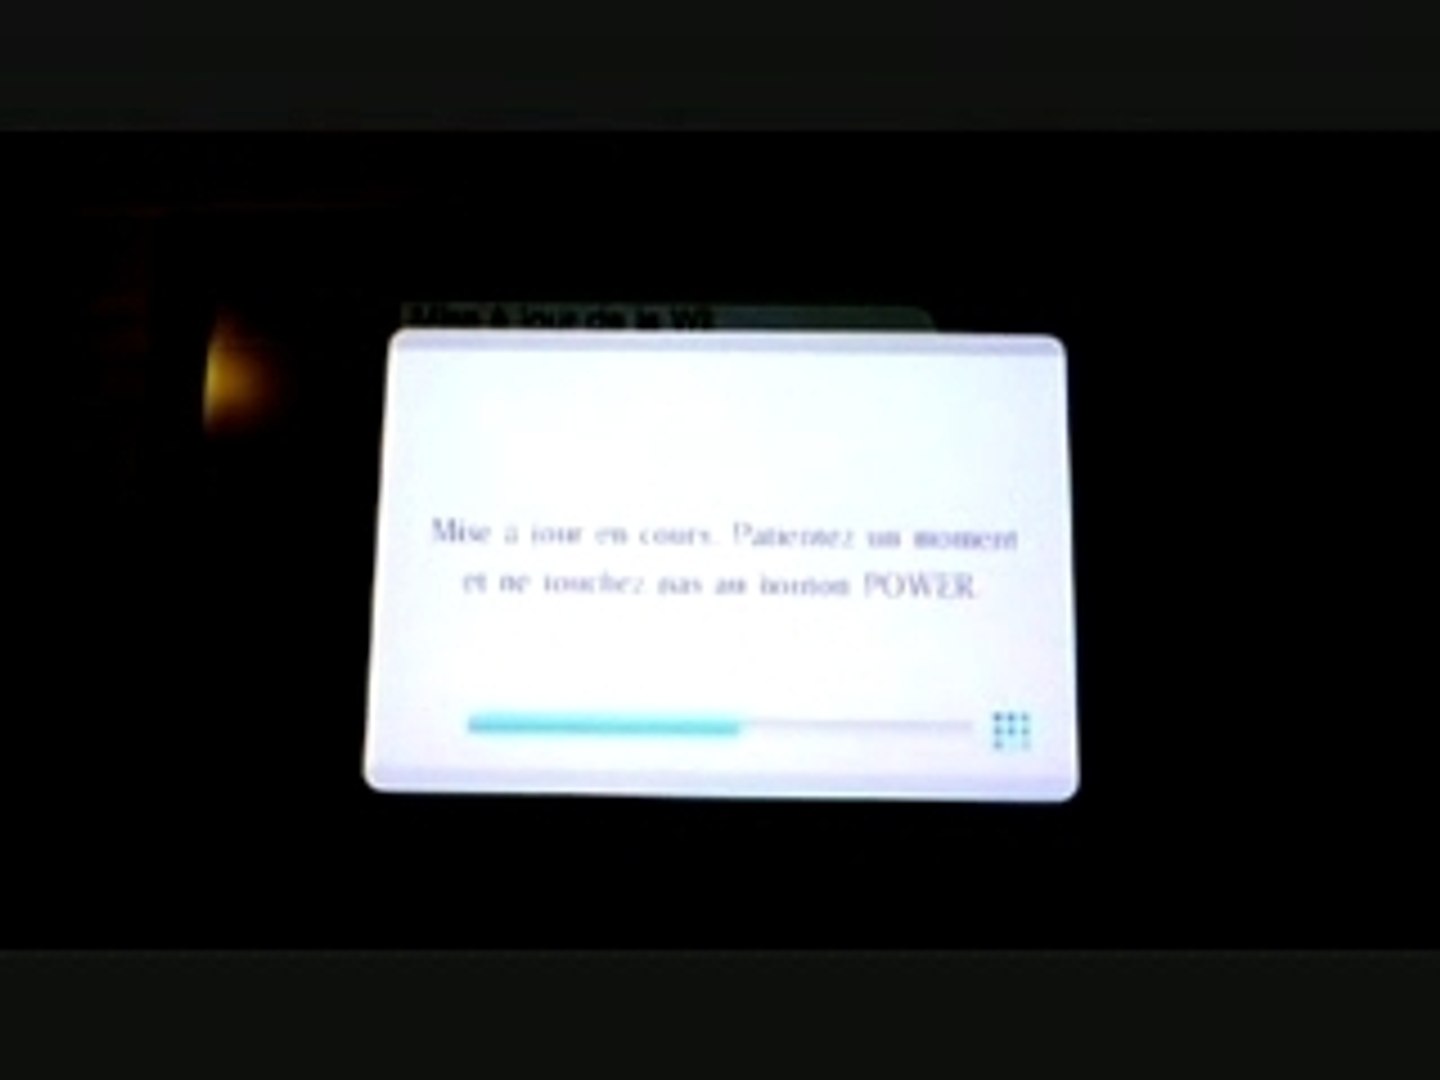 Mise a jour 3.0 pour Nintendo Wii - Vidéo Dailymotion